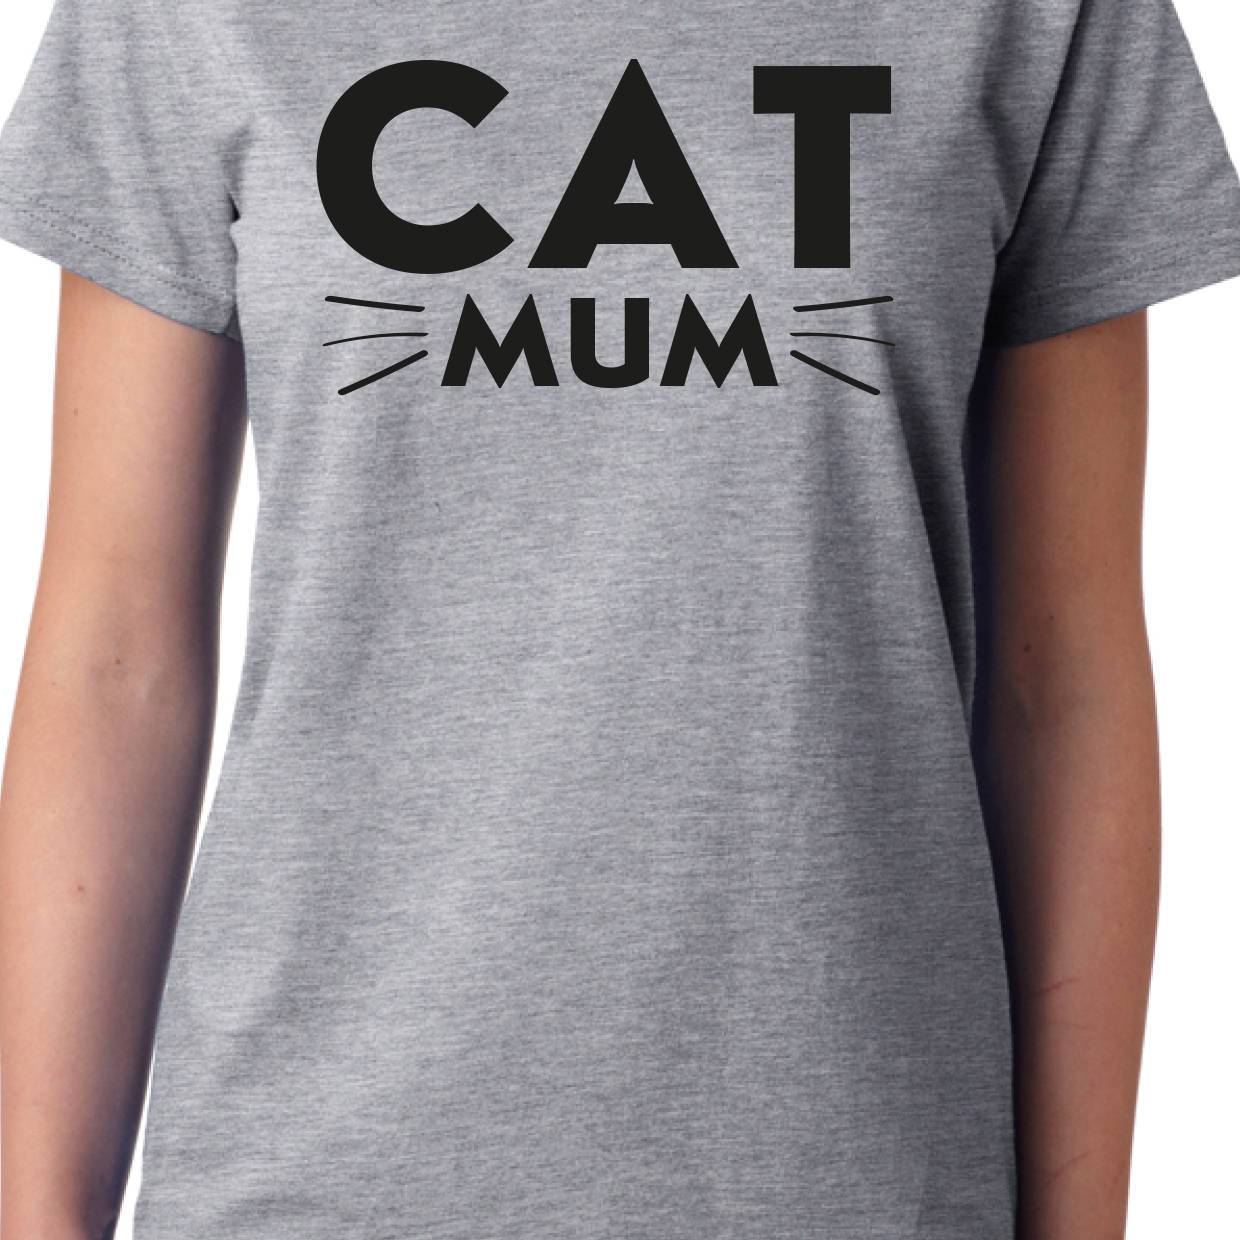 Cat Mum T-Shirt